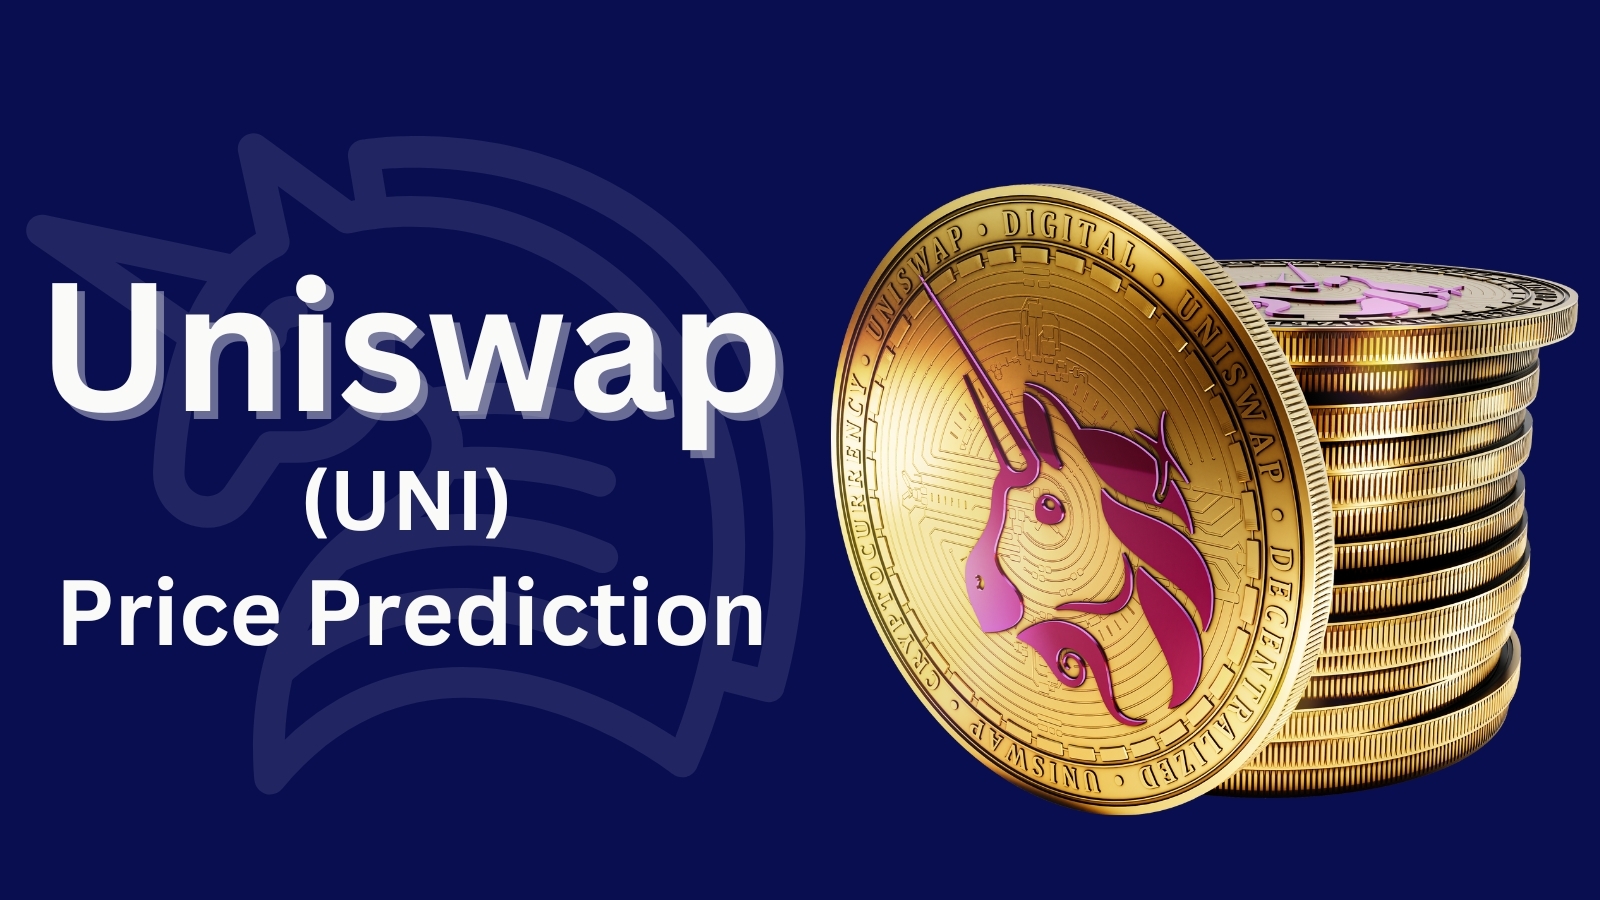 Uniswap (UNI) Price Prediction